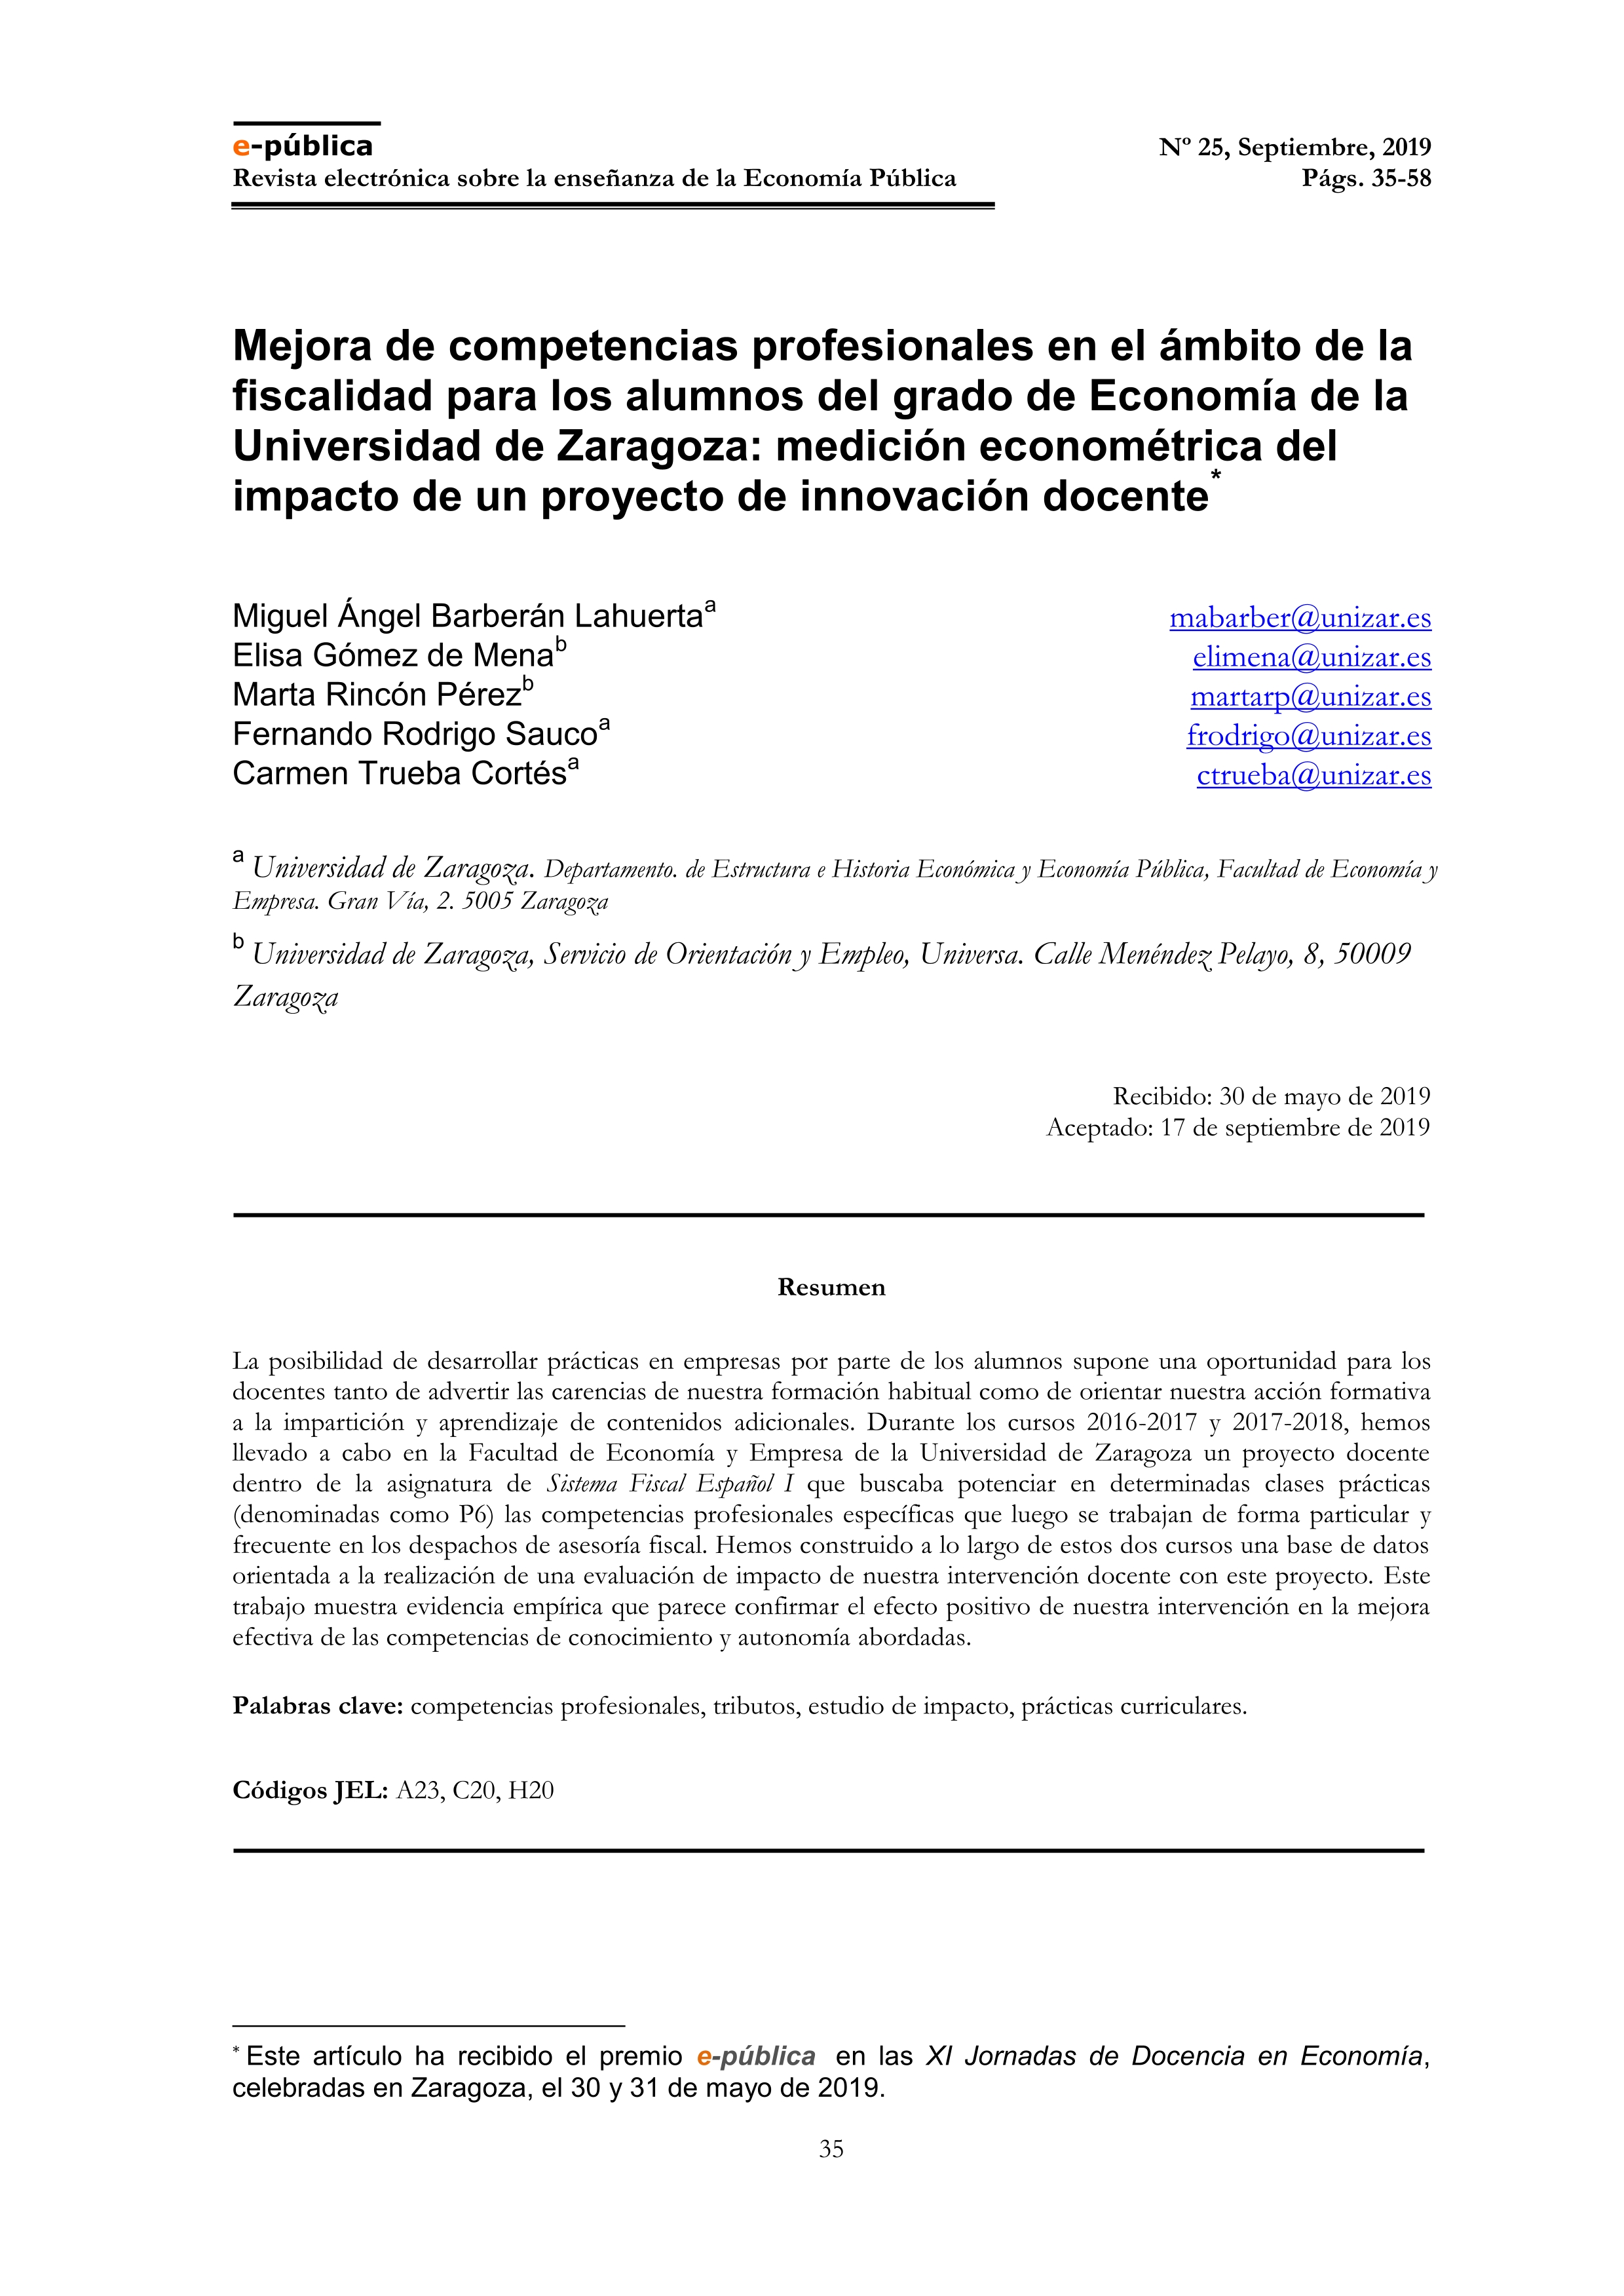 Mejora de competencias profesionales en el ámbito de la fiscalidad para los alumnos del grado de Economía de la Universidad de Zaragoza: medición econométrica del impacto de un proyecto de innovación docente